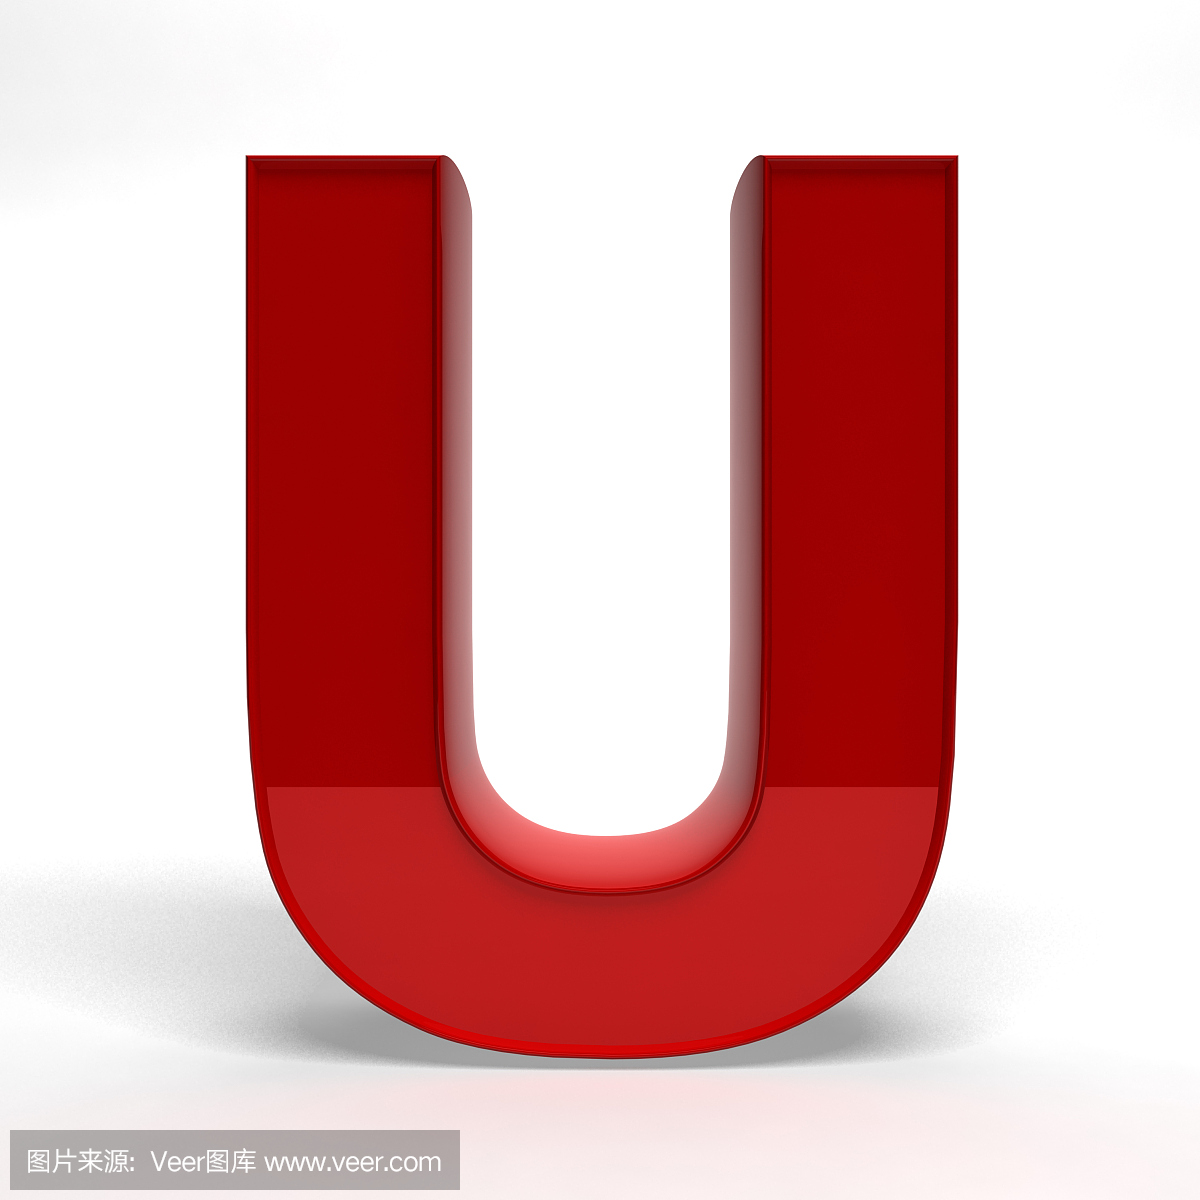 英文字母U,字母U,U字母,英语字母U